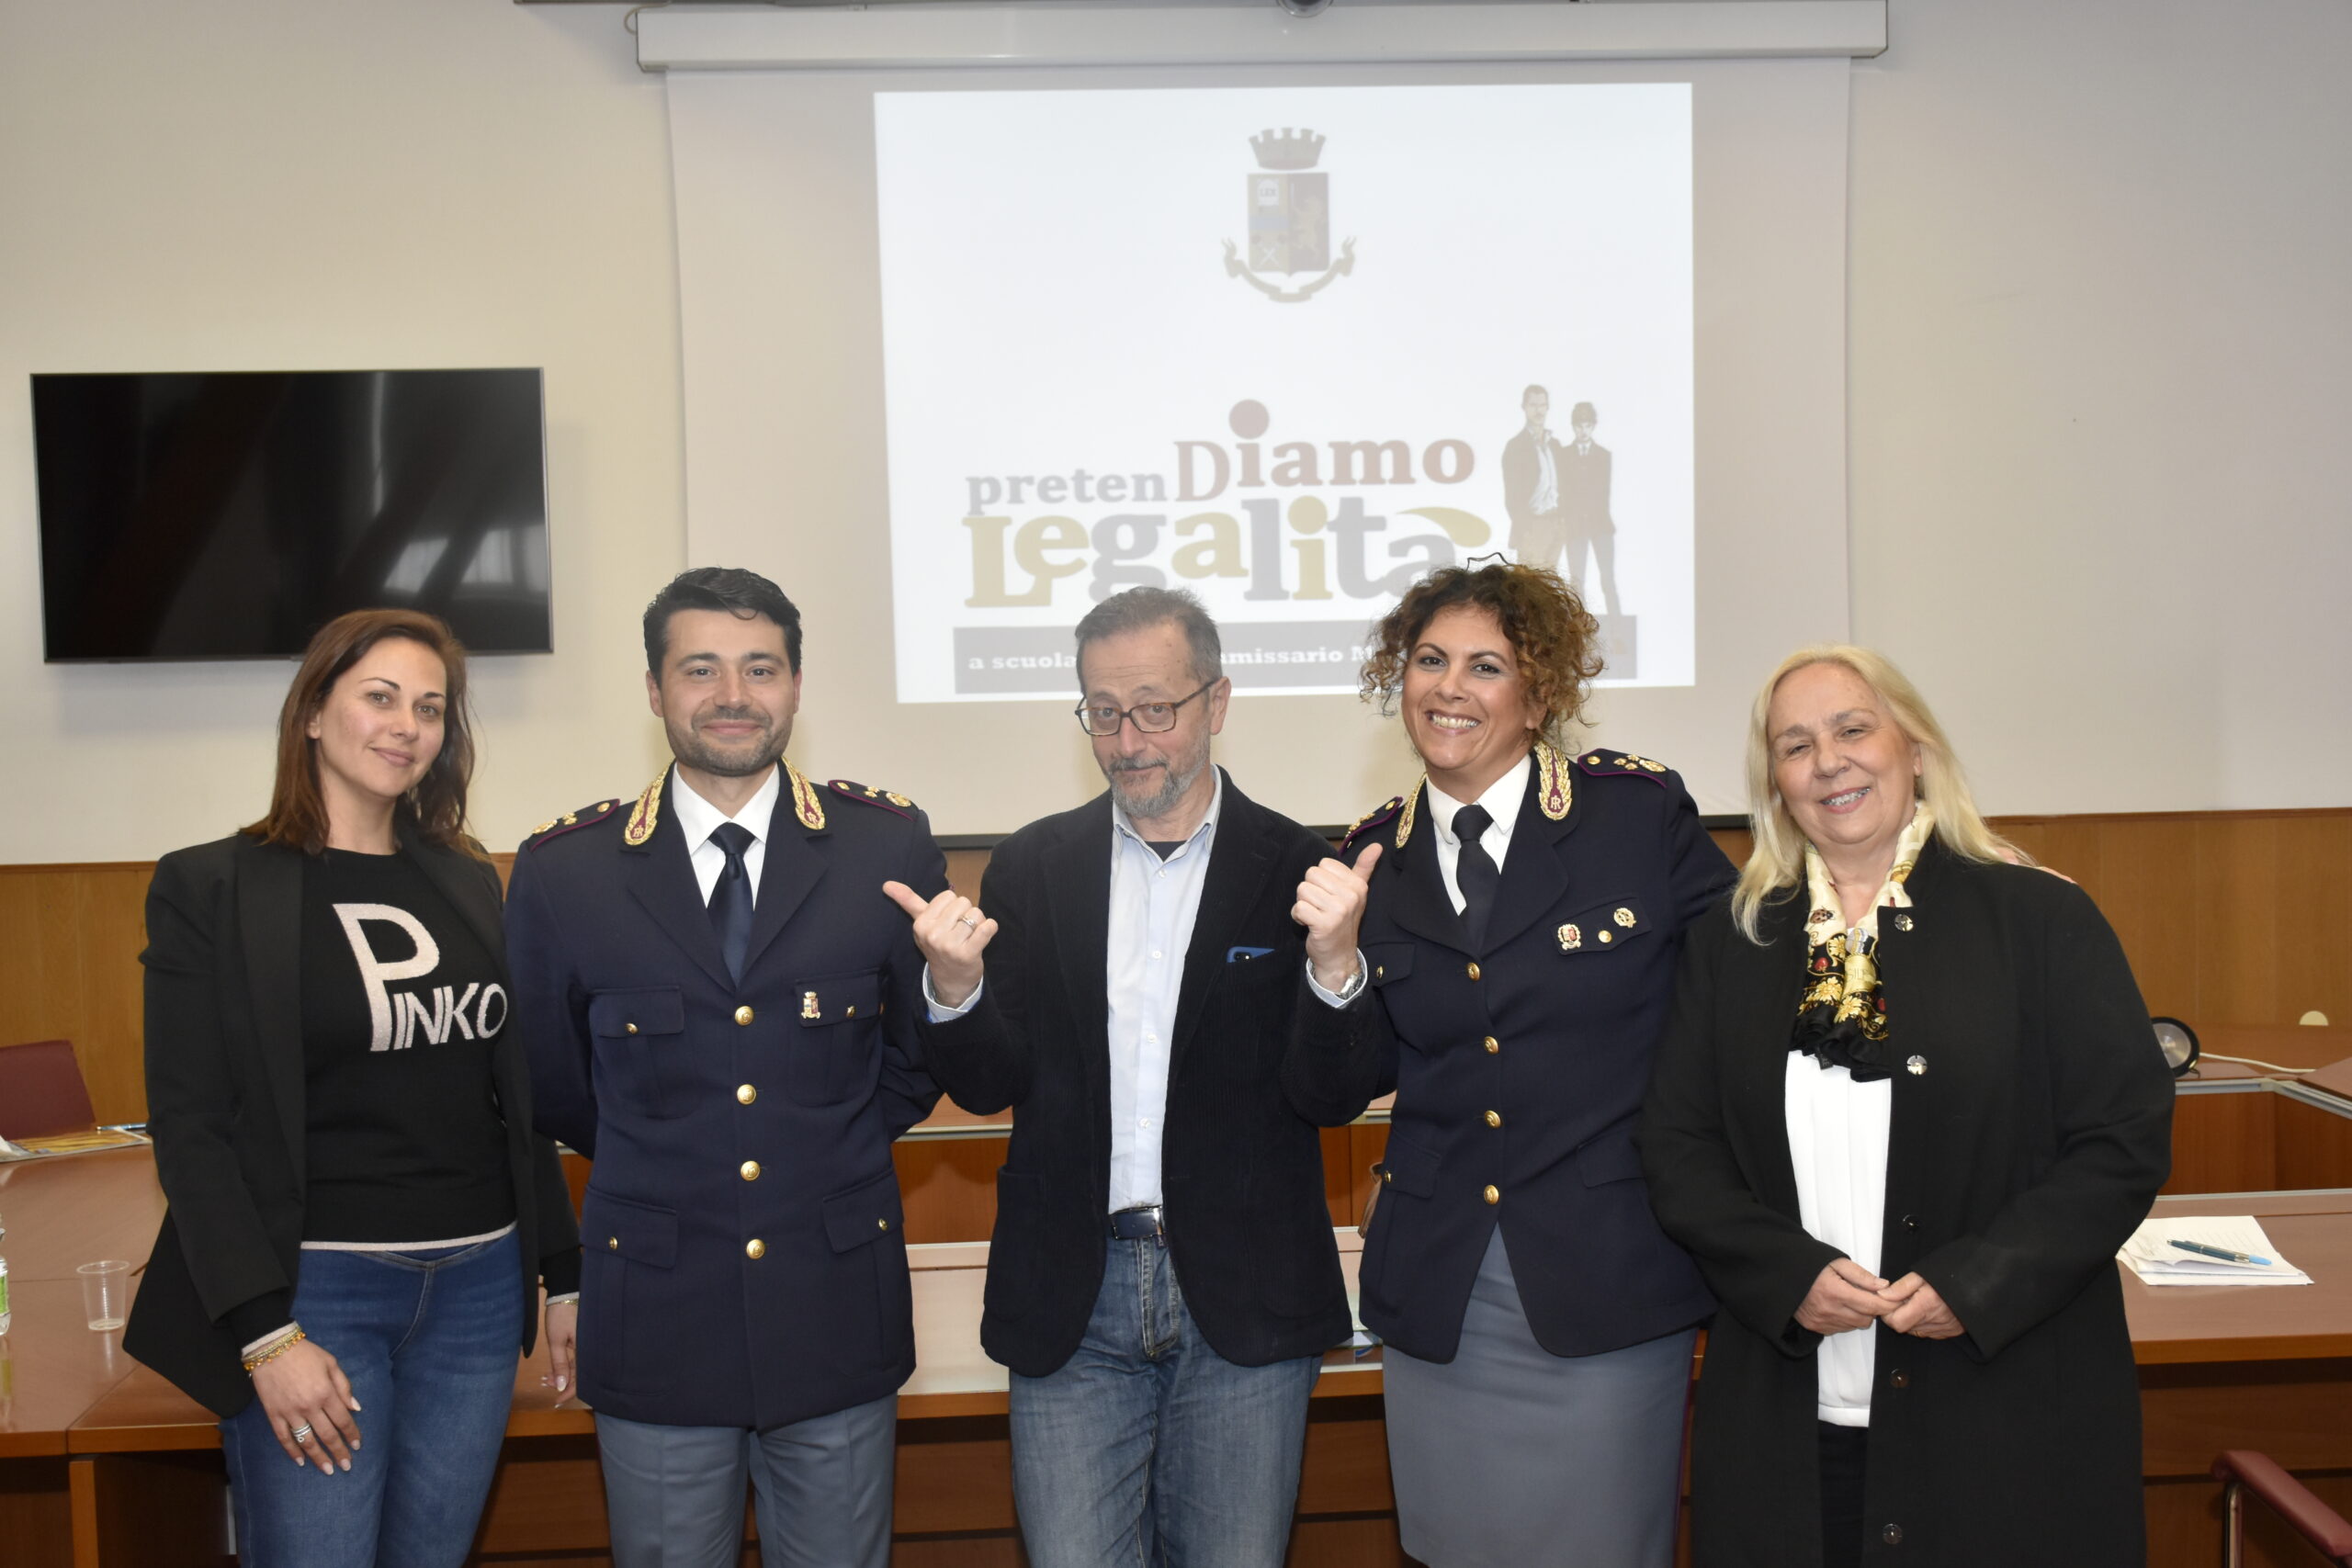 Salerno: progetto pretendiamo legalità, riunita commissione